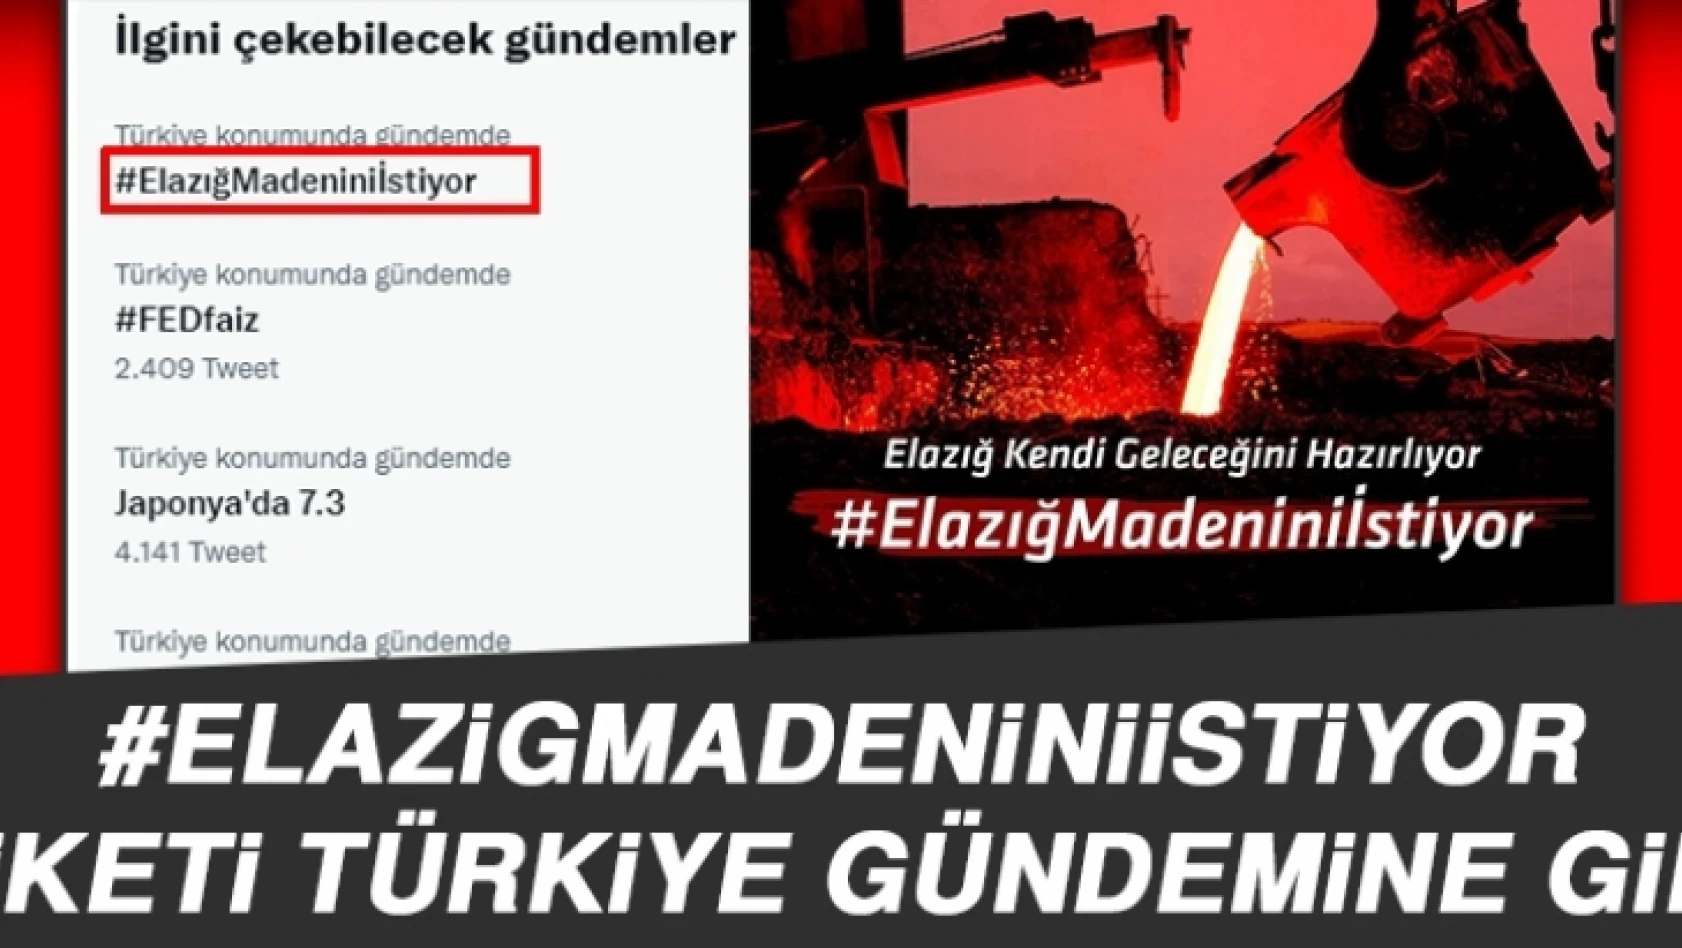 #ElazigMadeniniİstiyor Etiketi Türkiye Gündemine Girdi